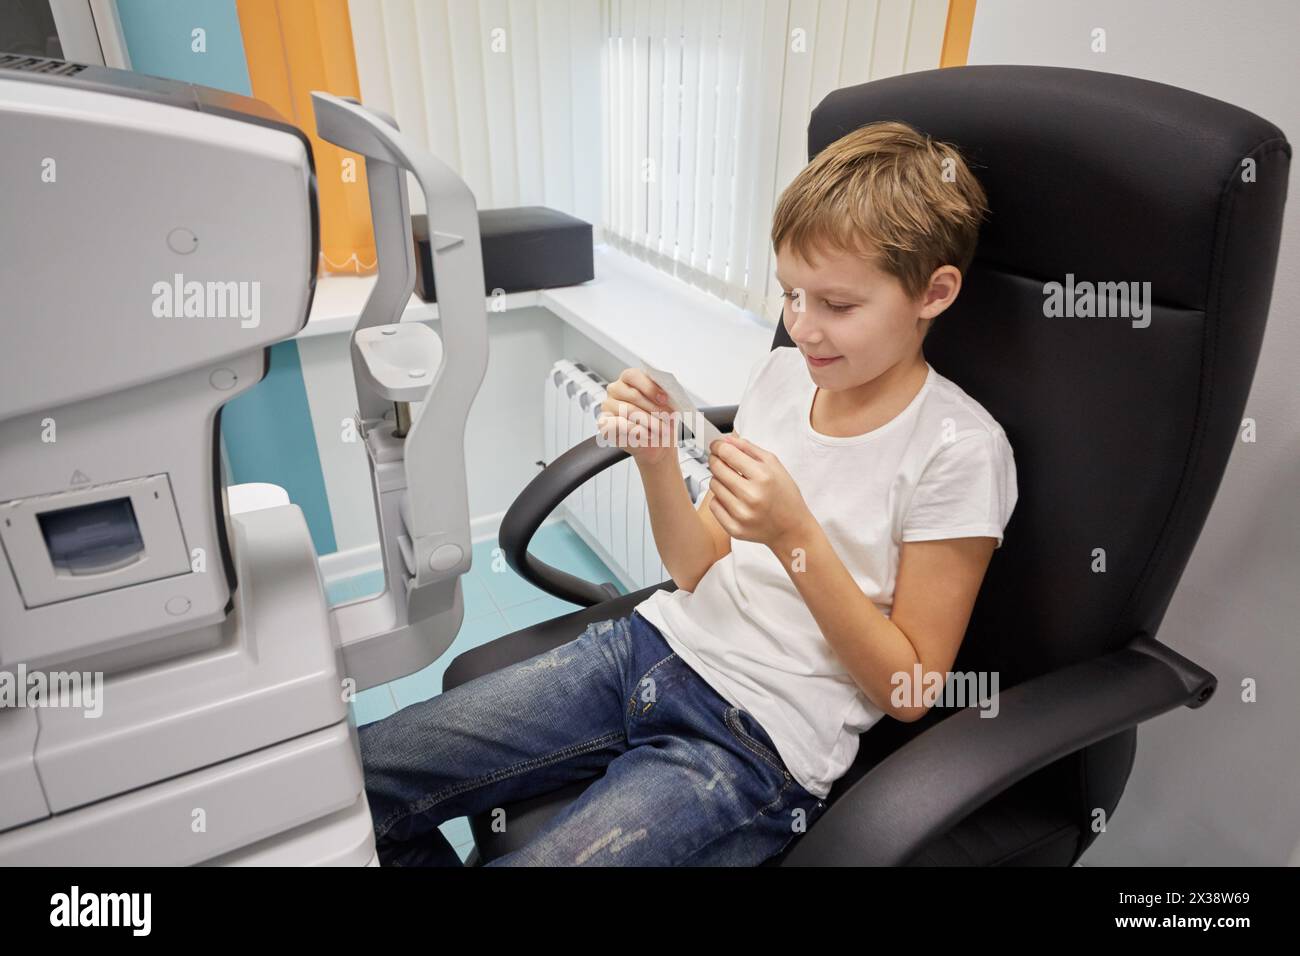 Junge liest Ergebnisse auf Papier, sitzt im Sessel neben Keratometer. Stockfoto